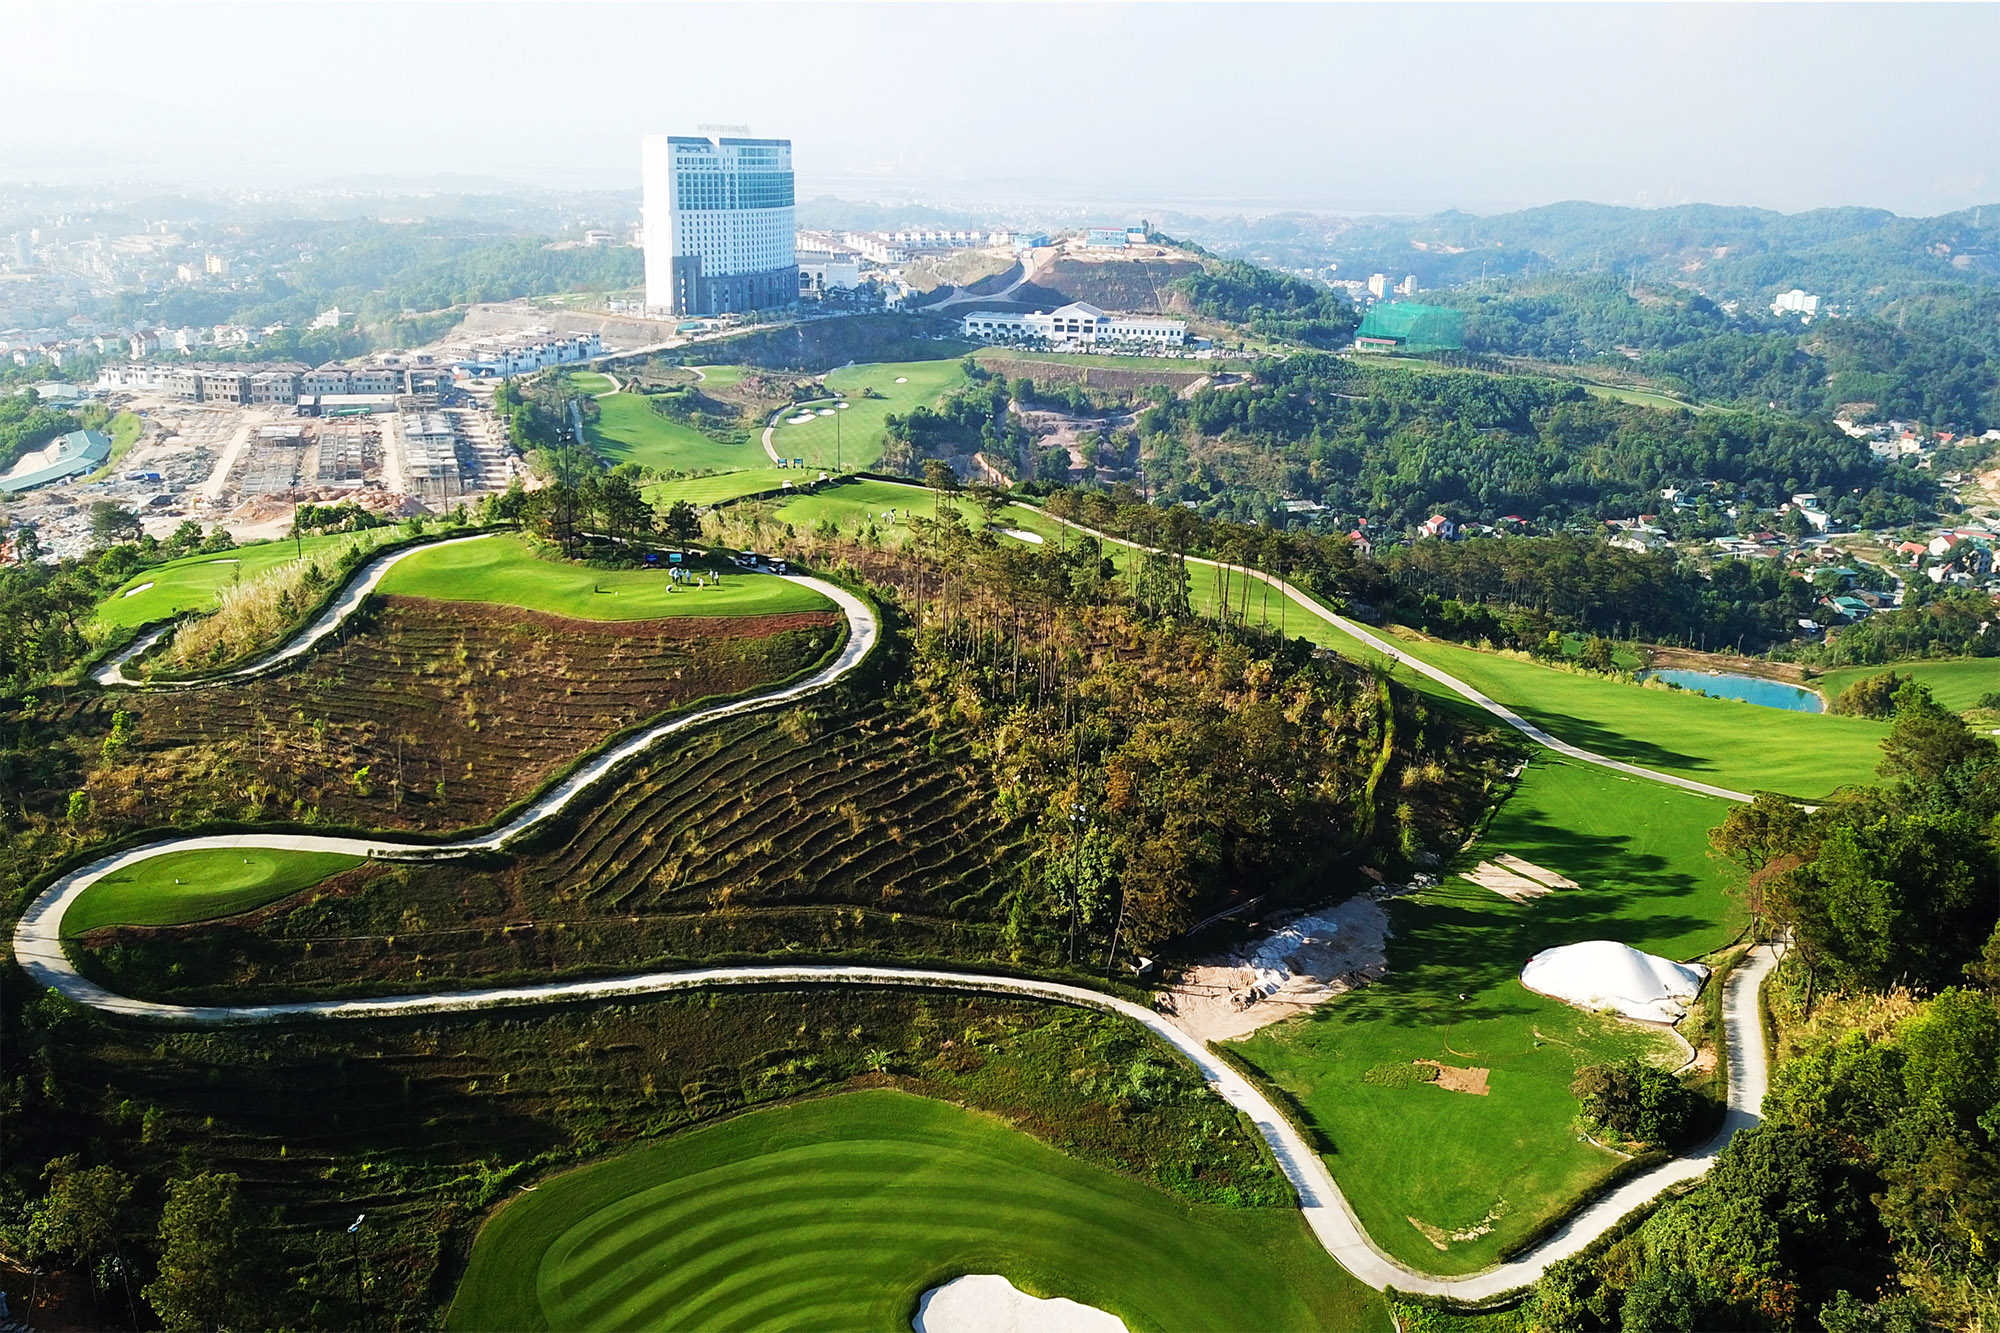 Quần thể nghỉ dưỡng và sân golf FLC Hạ Long - một trong những sản phẩm du lịch mới giữa lòng thành phố